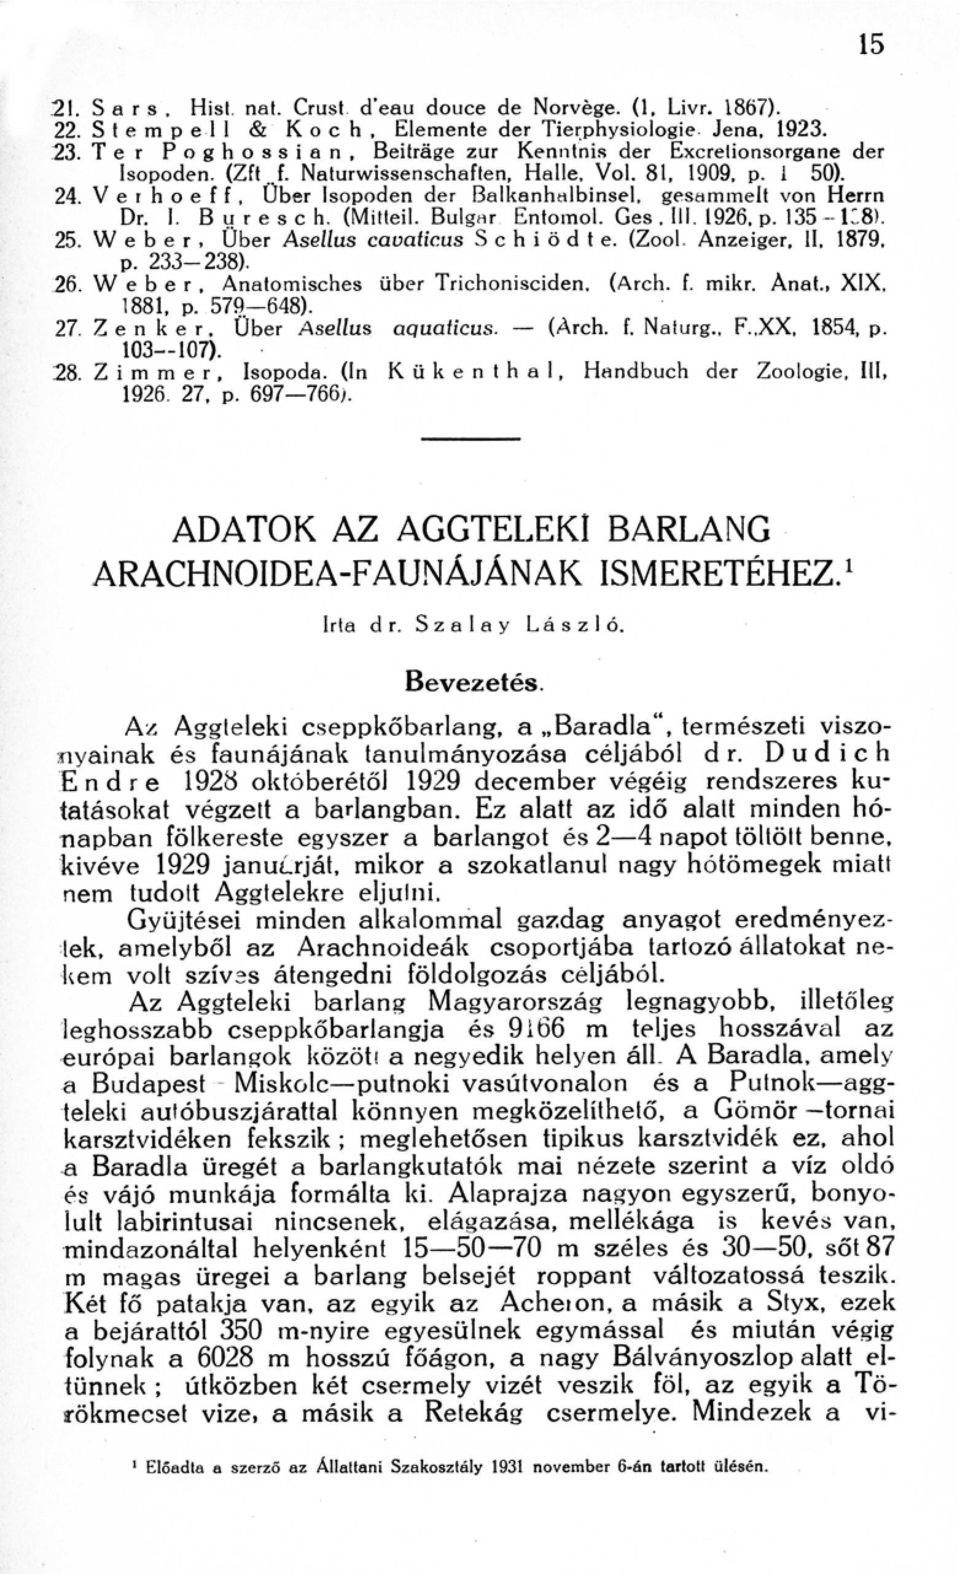 V e r h o e f f, Uber lsopoden der Balkenhalbinsel, gesaminelt von Herr n Dr. I. B u r e s c h. (Mitteil. Bulgrir Entomol. Ges, Ill. 1926, p. 135 -- 18). 25.